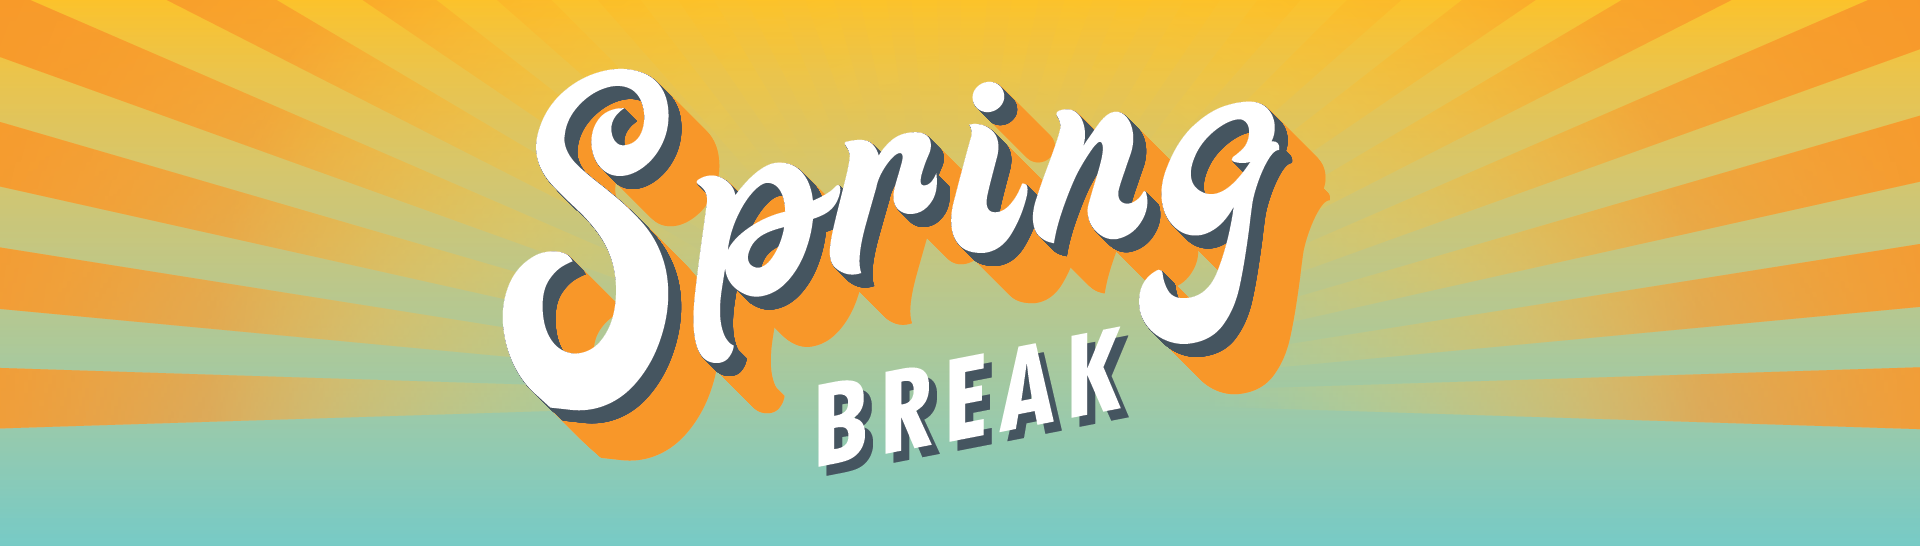 spring_break_1